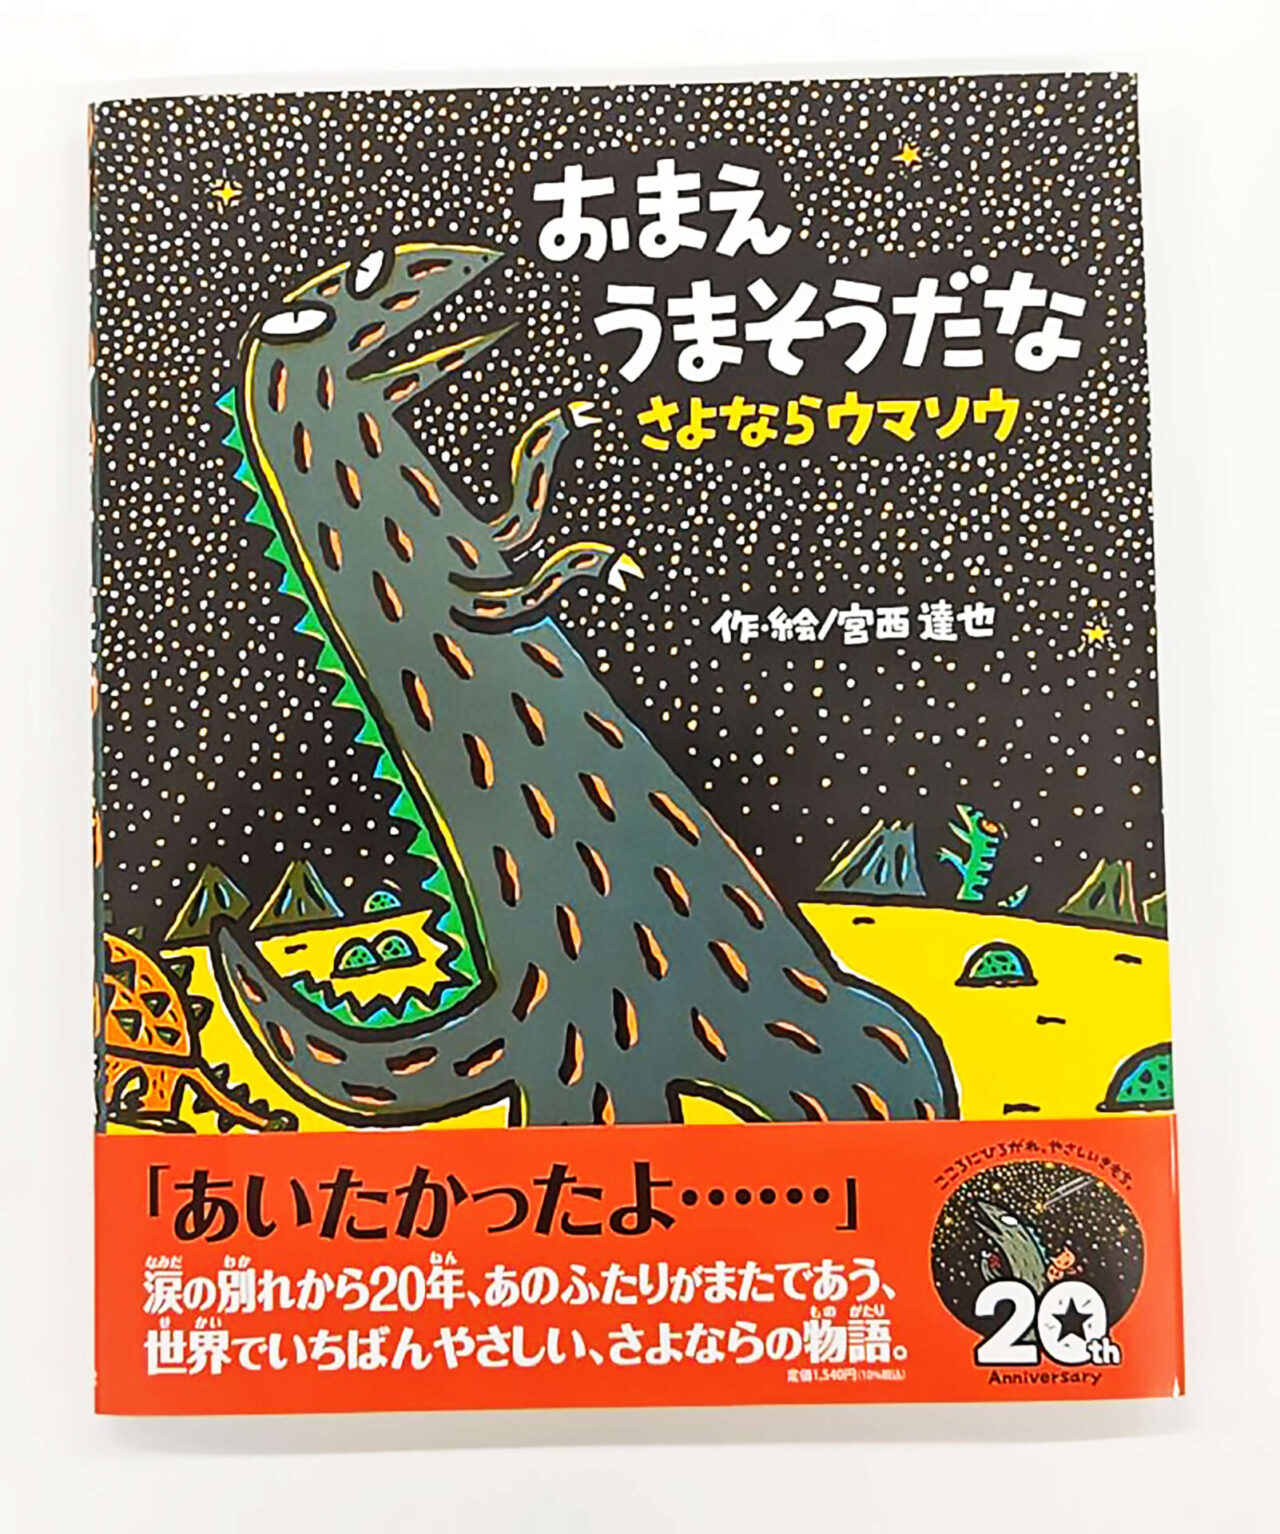 【三島スカイウォーク恐竜迷路】×大人気絵本【おまえ うまそうだな】コラボイベント